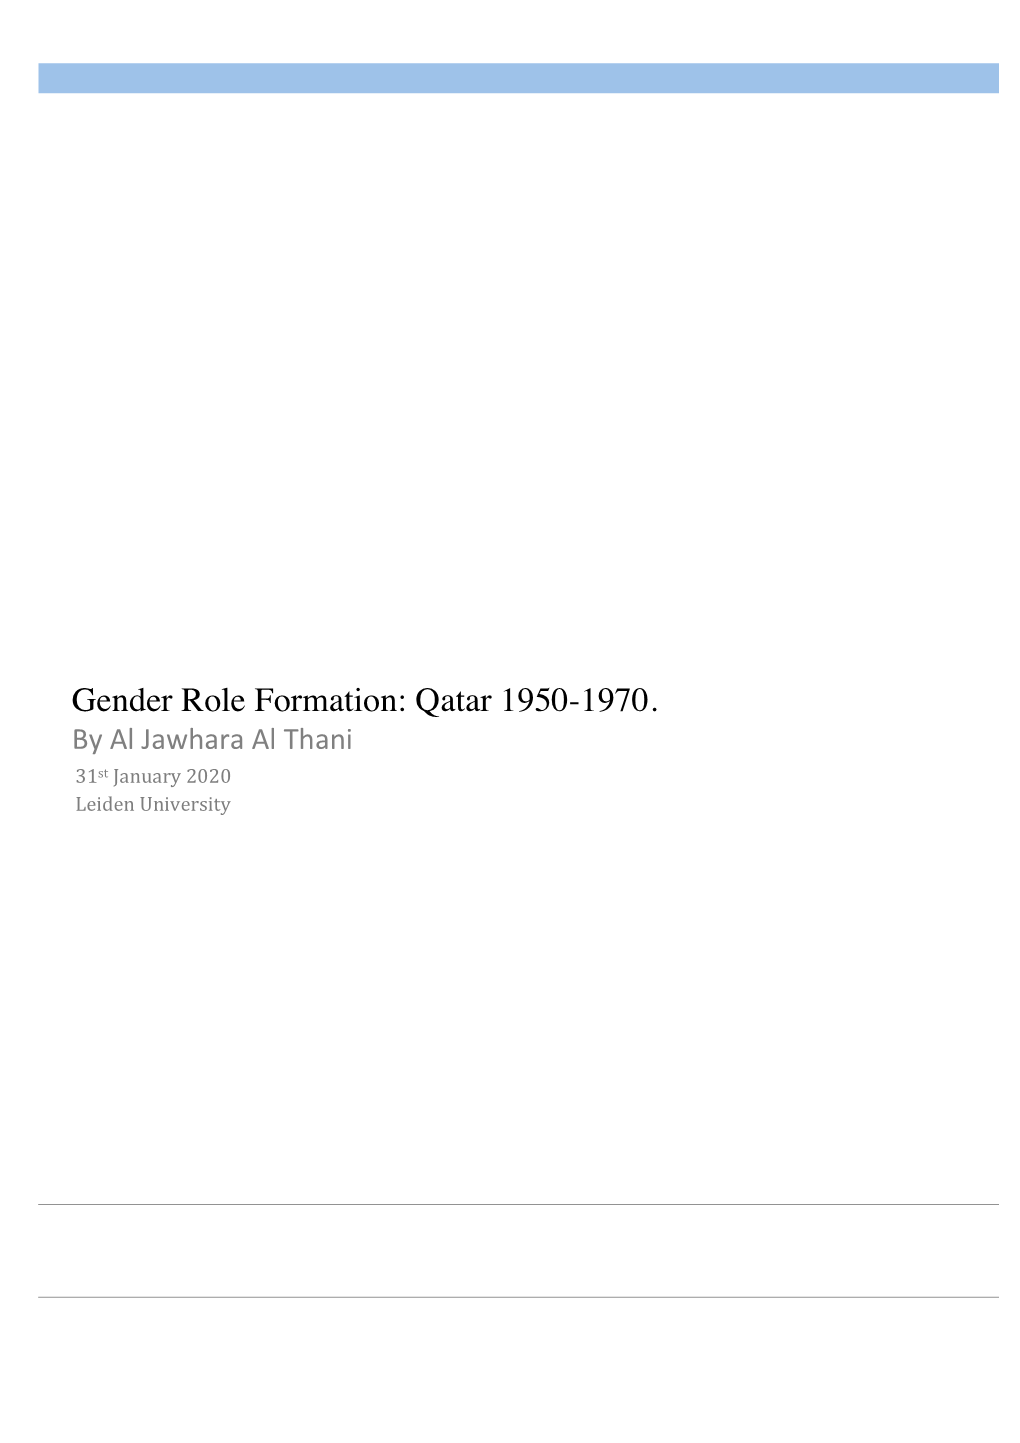 Gender Role Formation: Qatar 1950-1970. by Al Jawhara Al Thani 31 St January 2020 Leiden University Gender Role Formation: Qatar 1950-1970